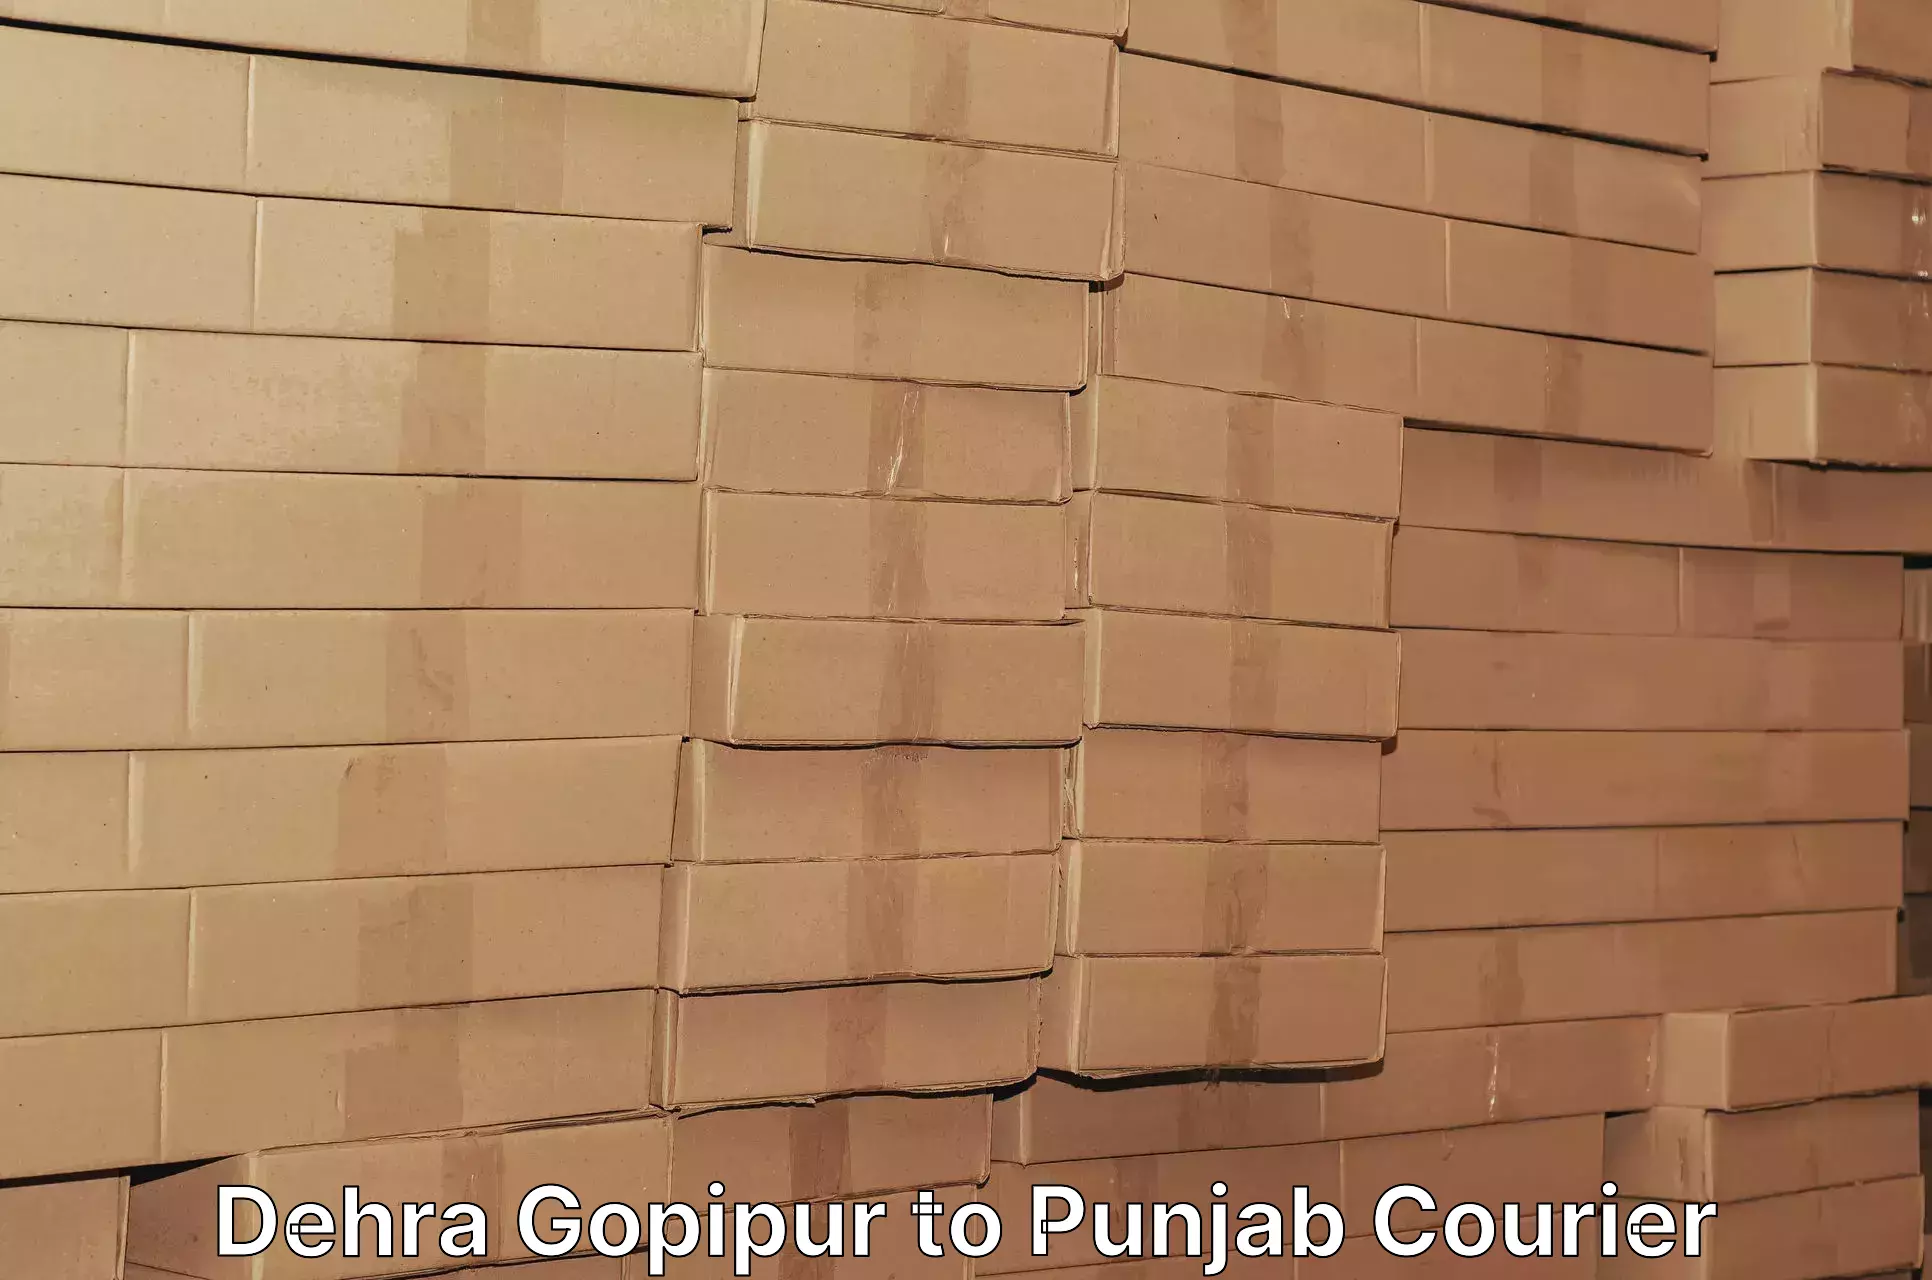 Efficient parcel transport Dehra Gopipur to Central University of Punjab Bathinda